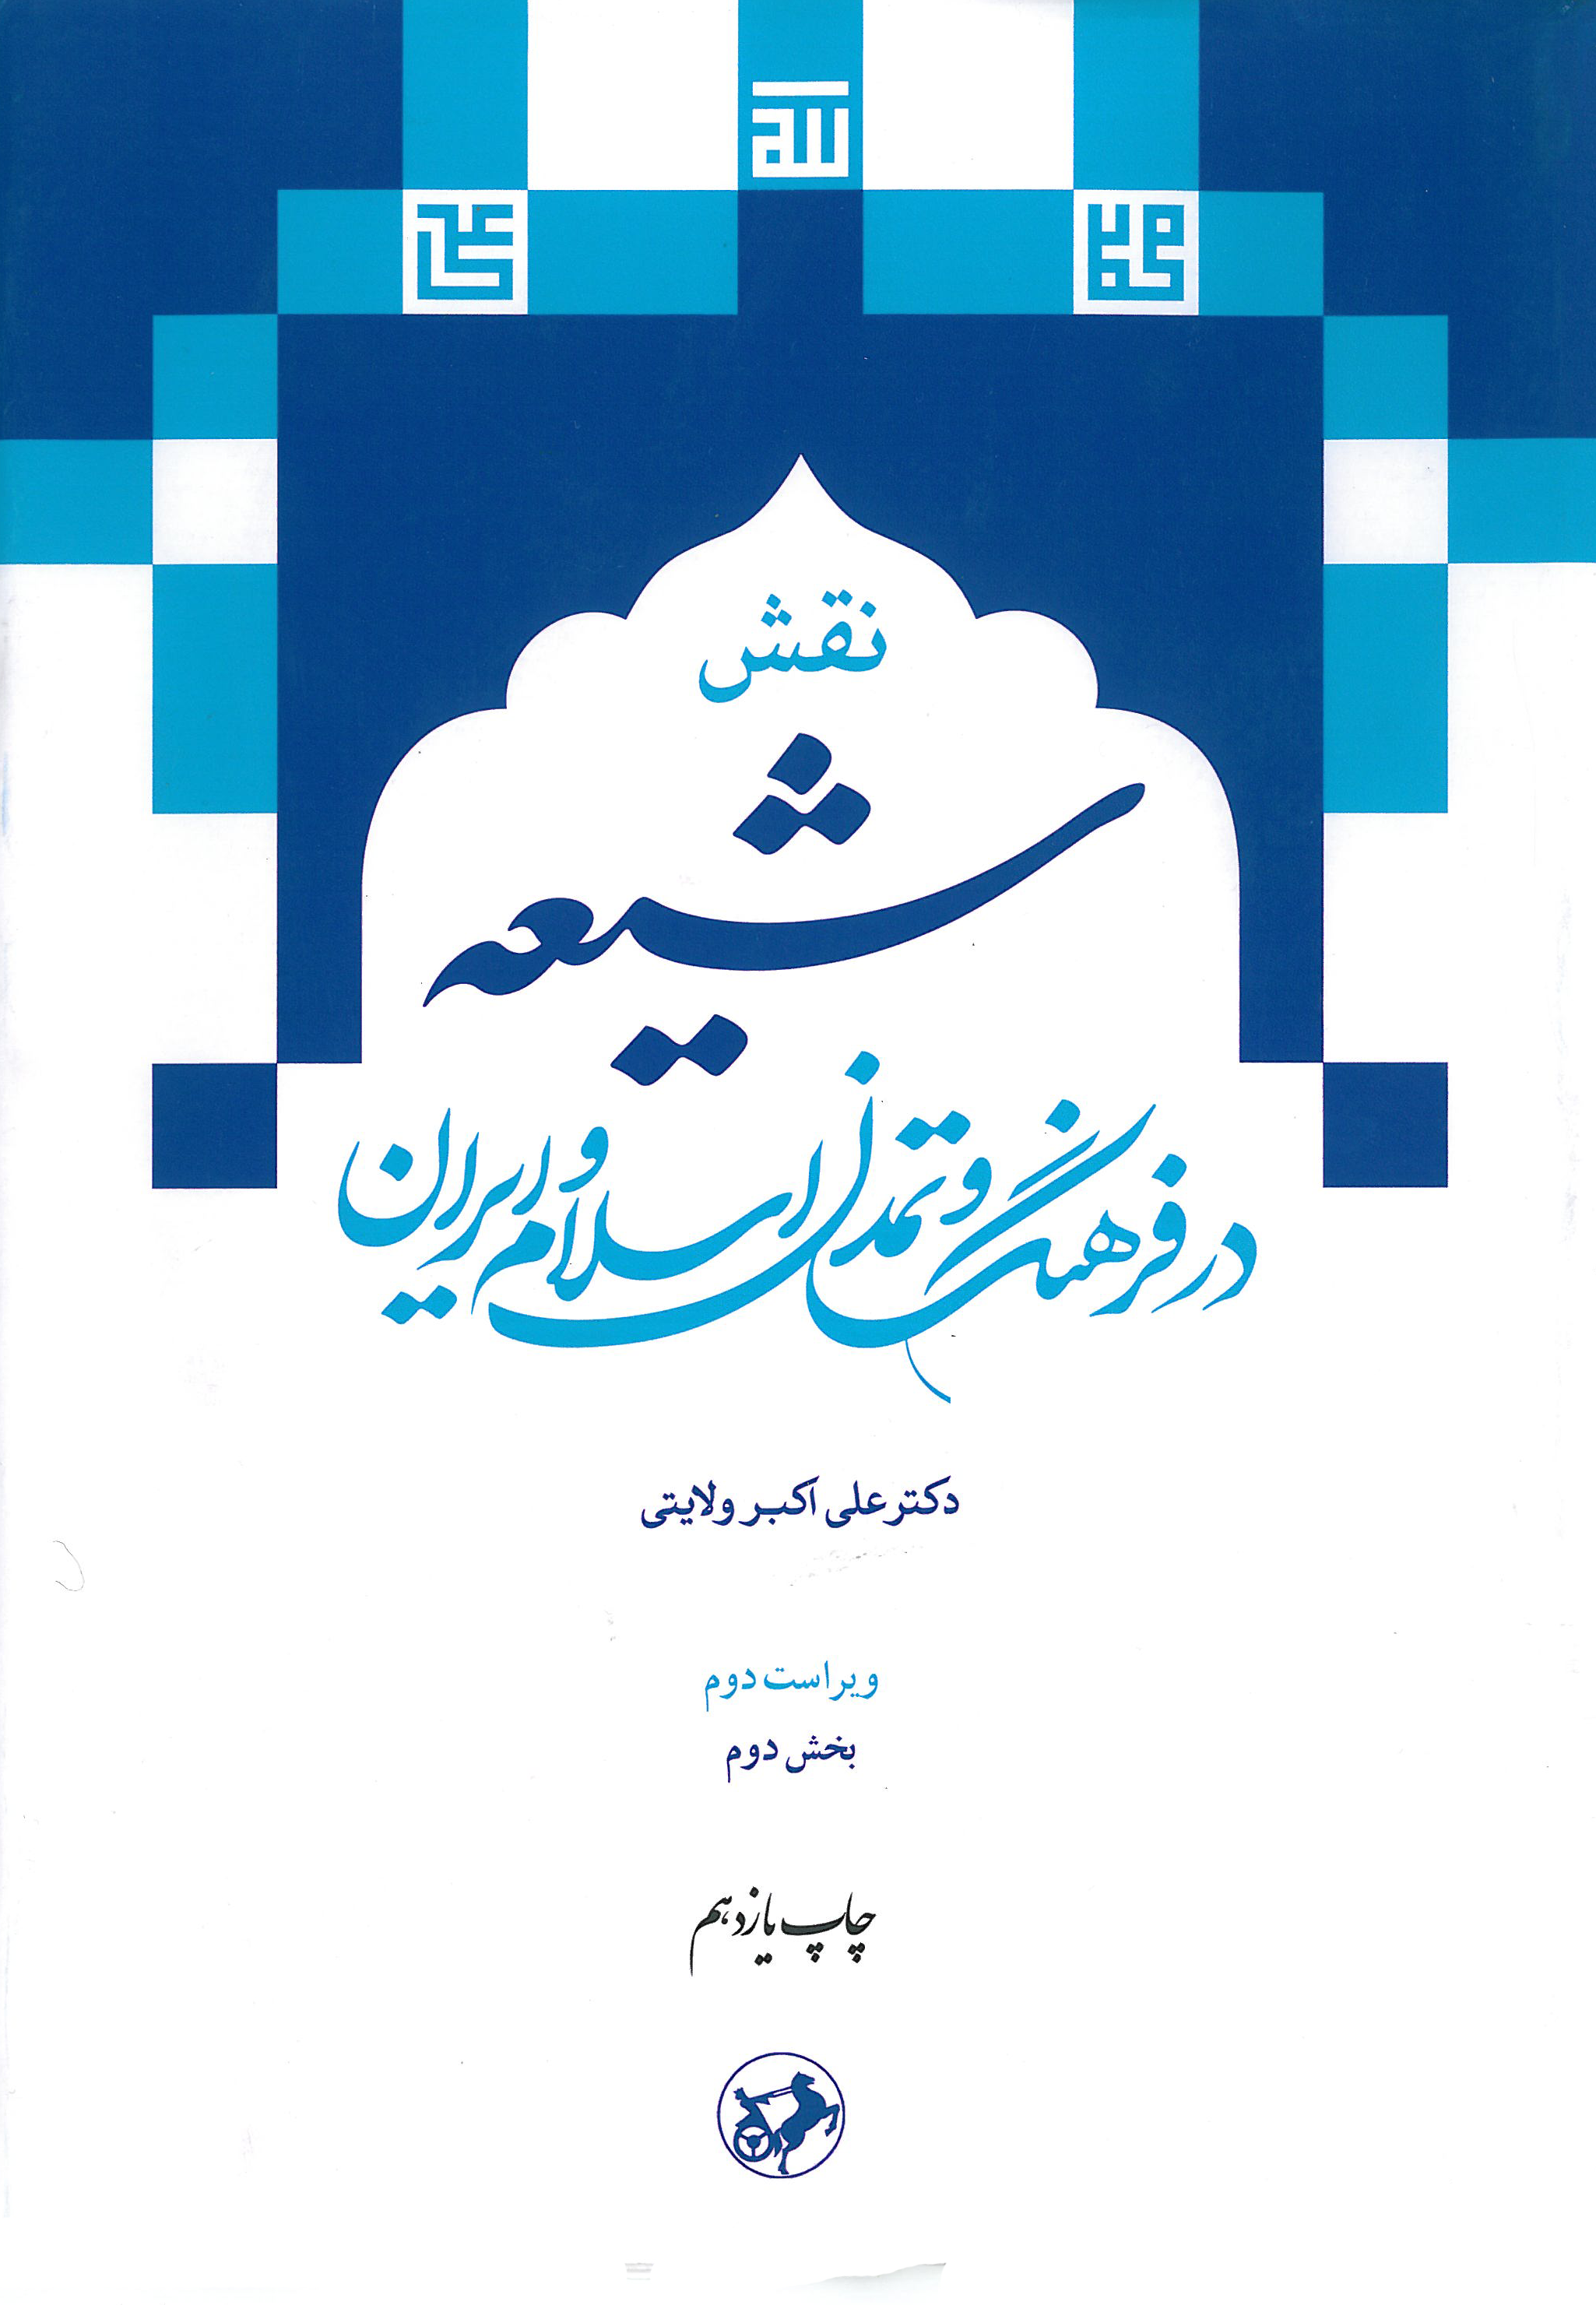 نقش شیعه در فرهنگ و تمدن اسلام و ایران(بخش دوم)